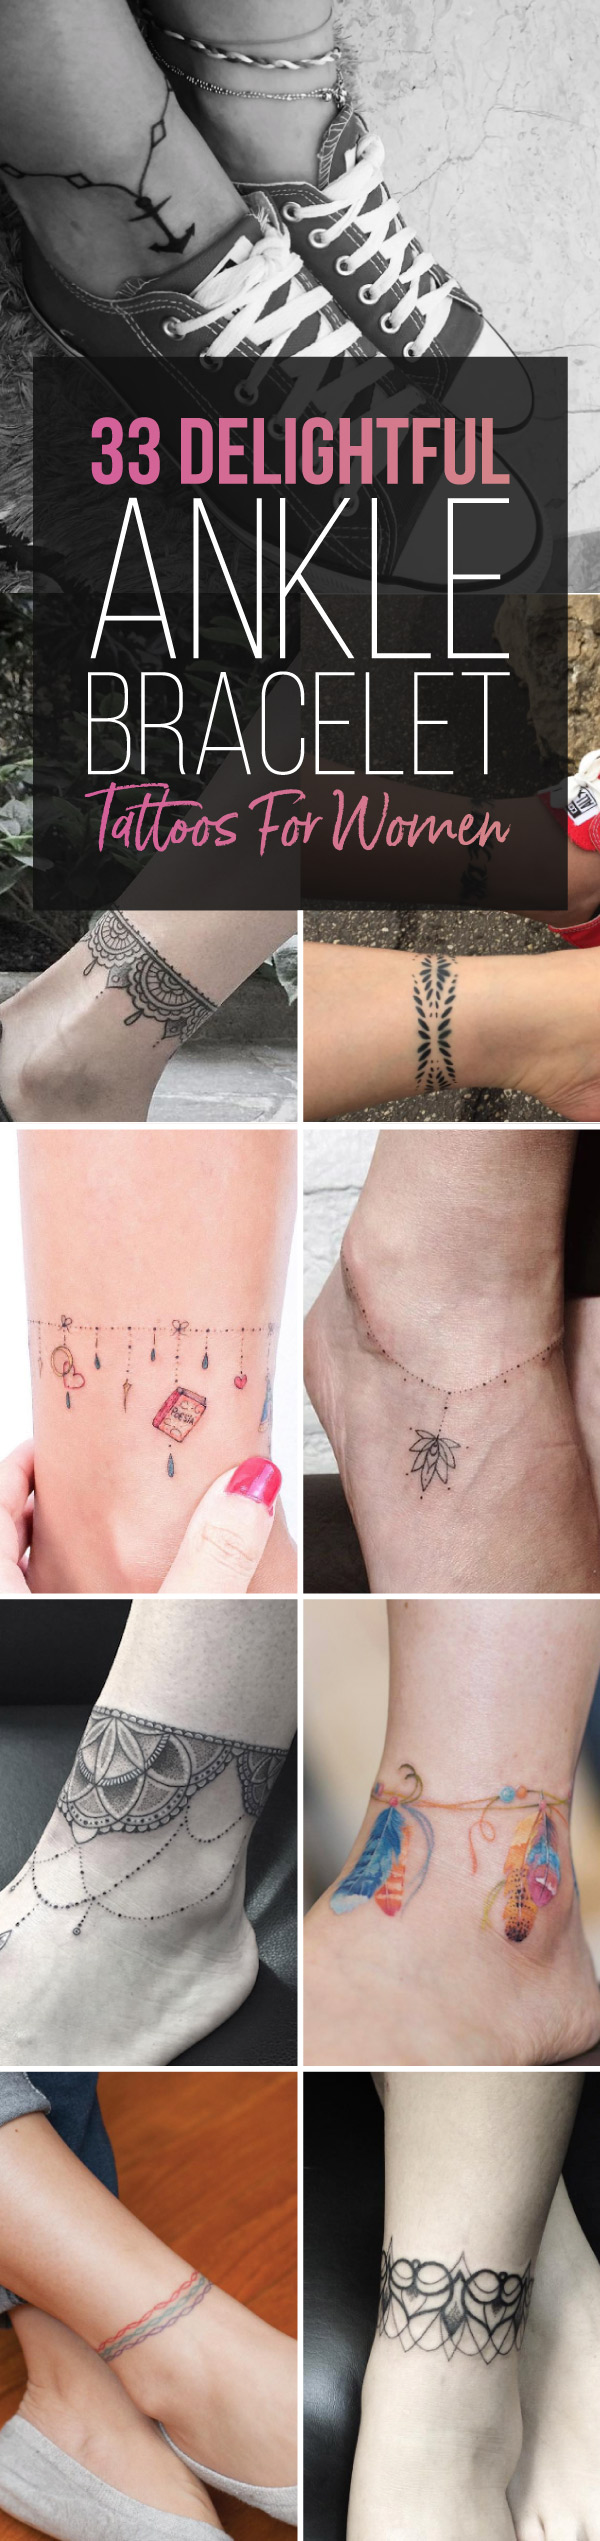 33 Delightful Ankle Bracelet Tattoos for Women